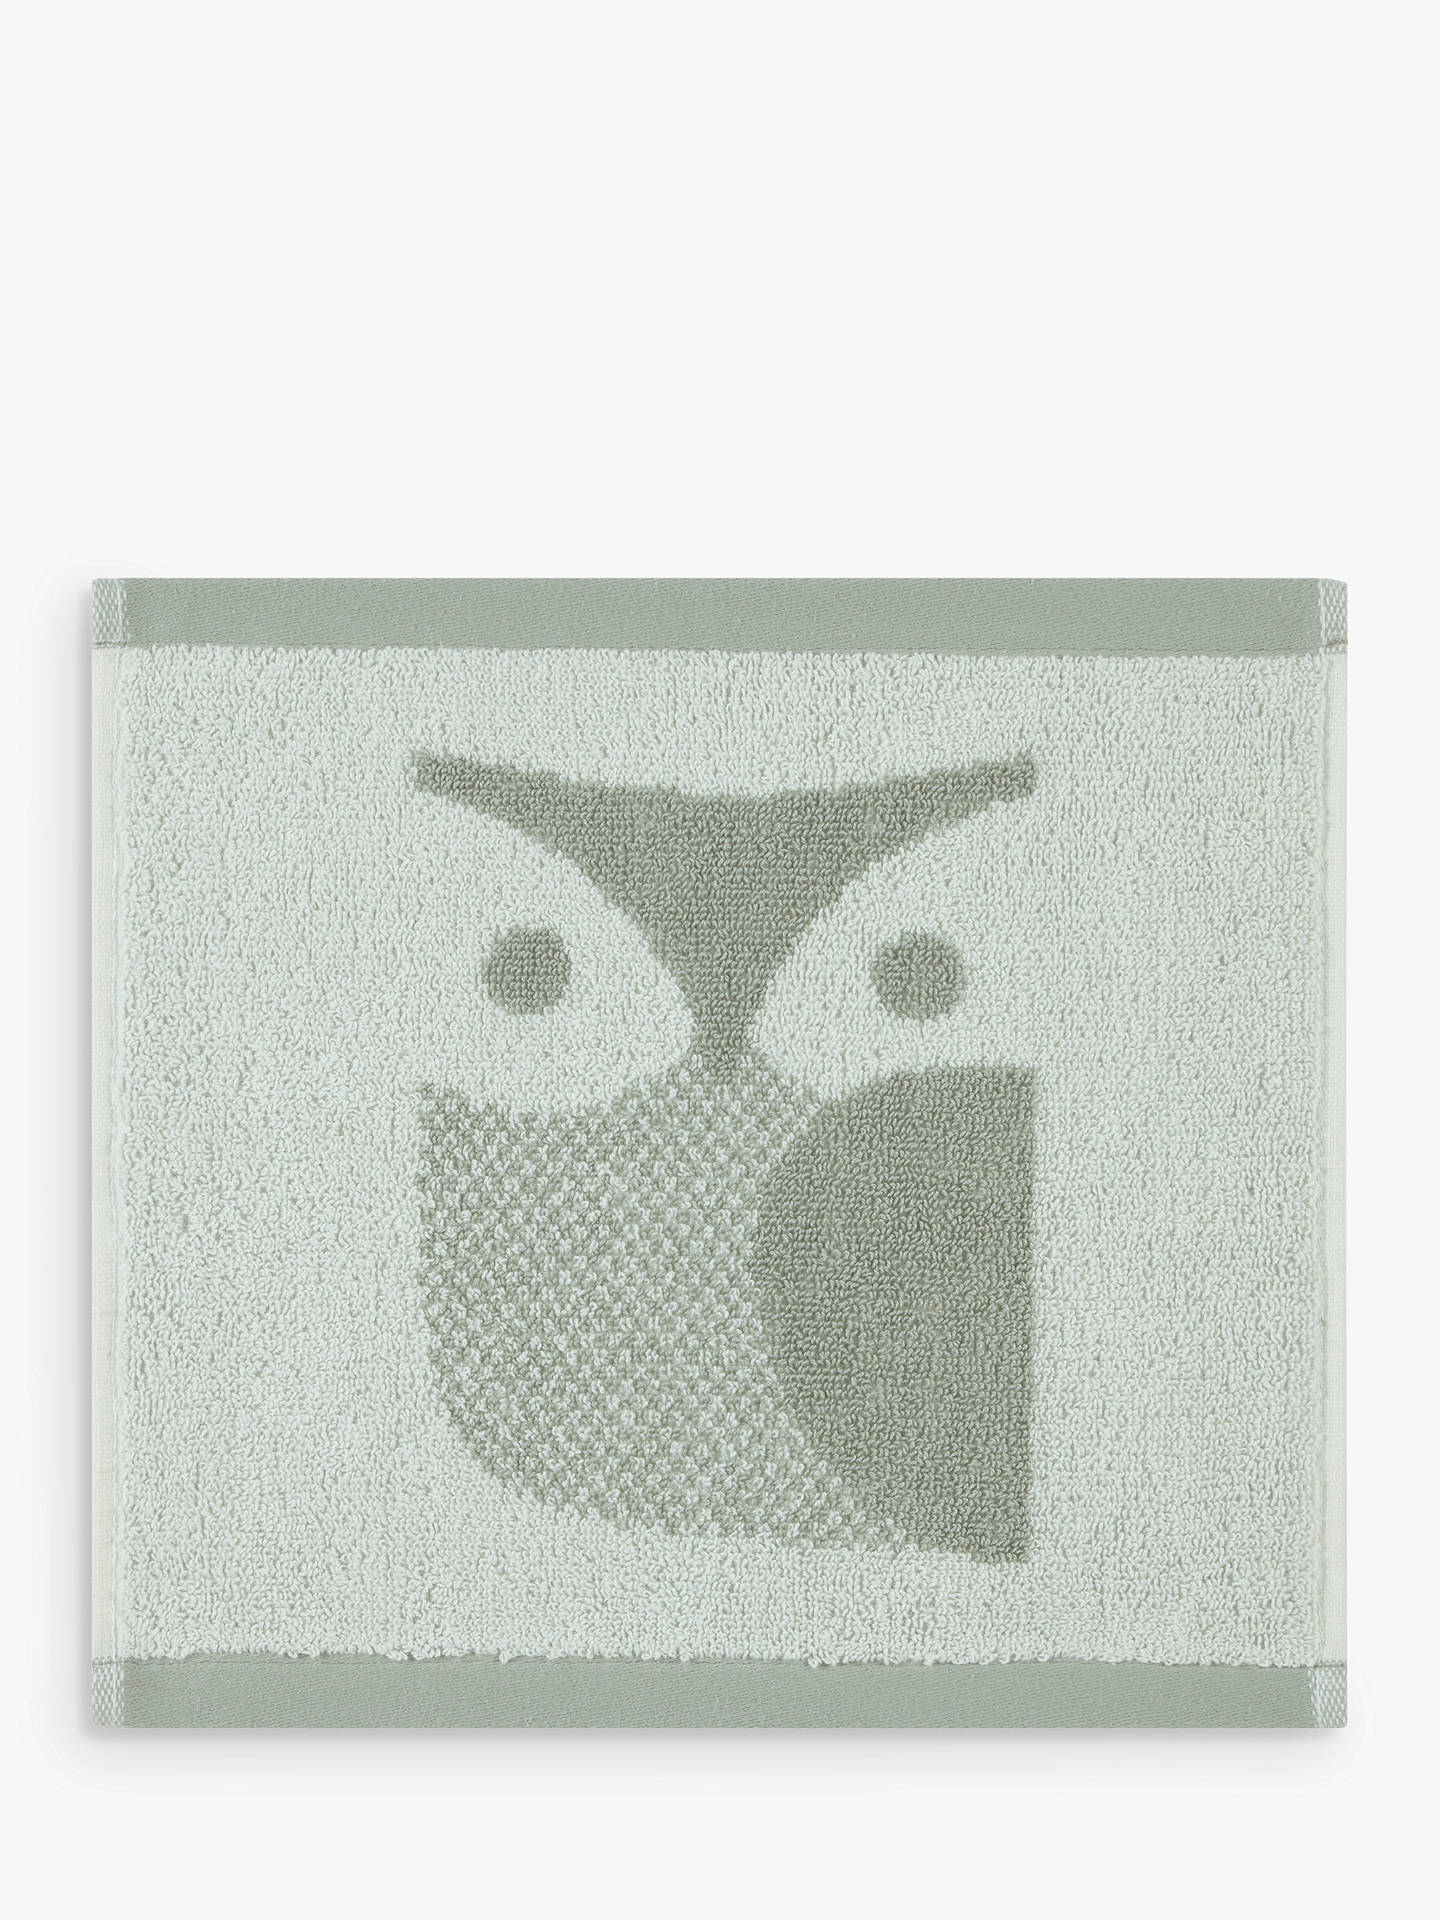 Owl Hand Towel in Granite 